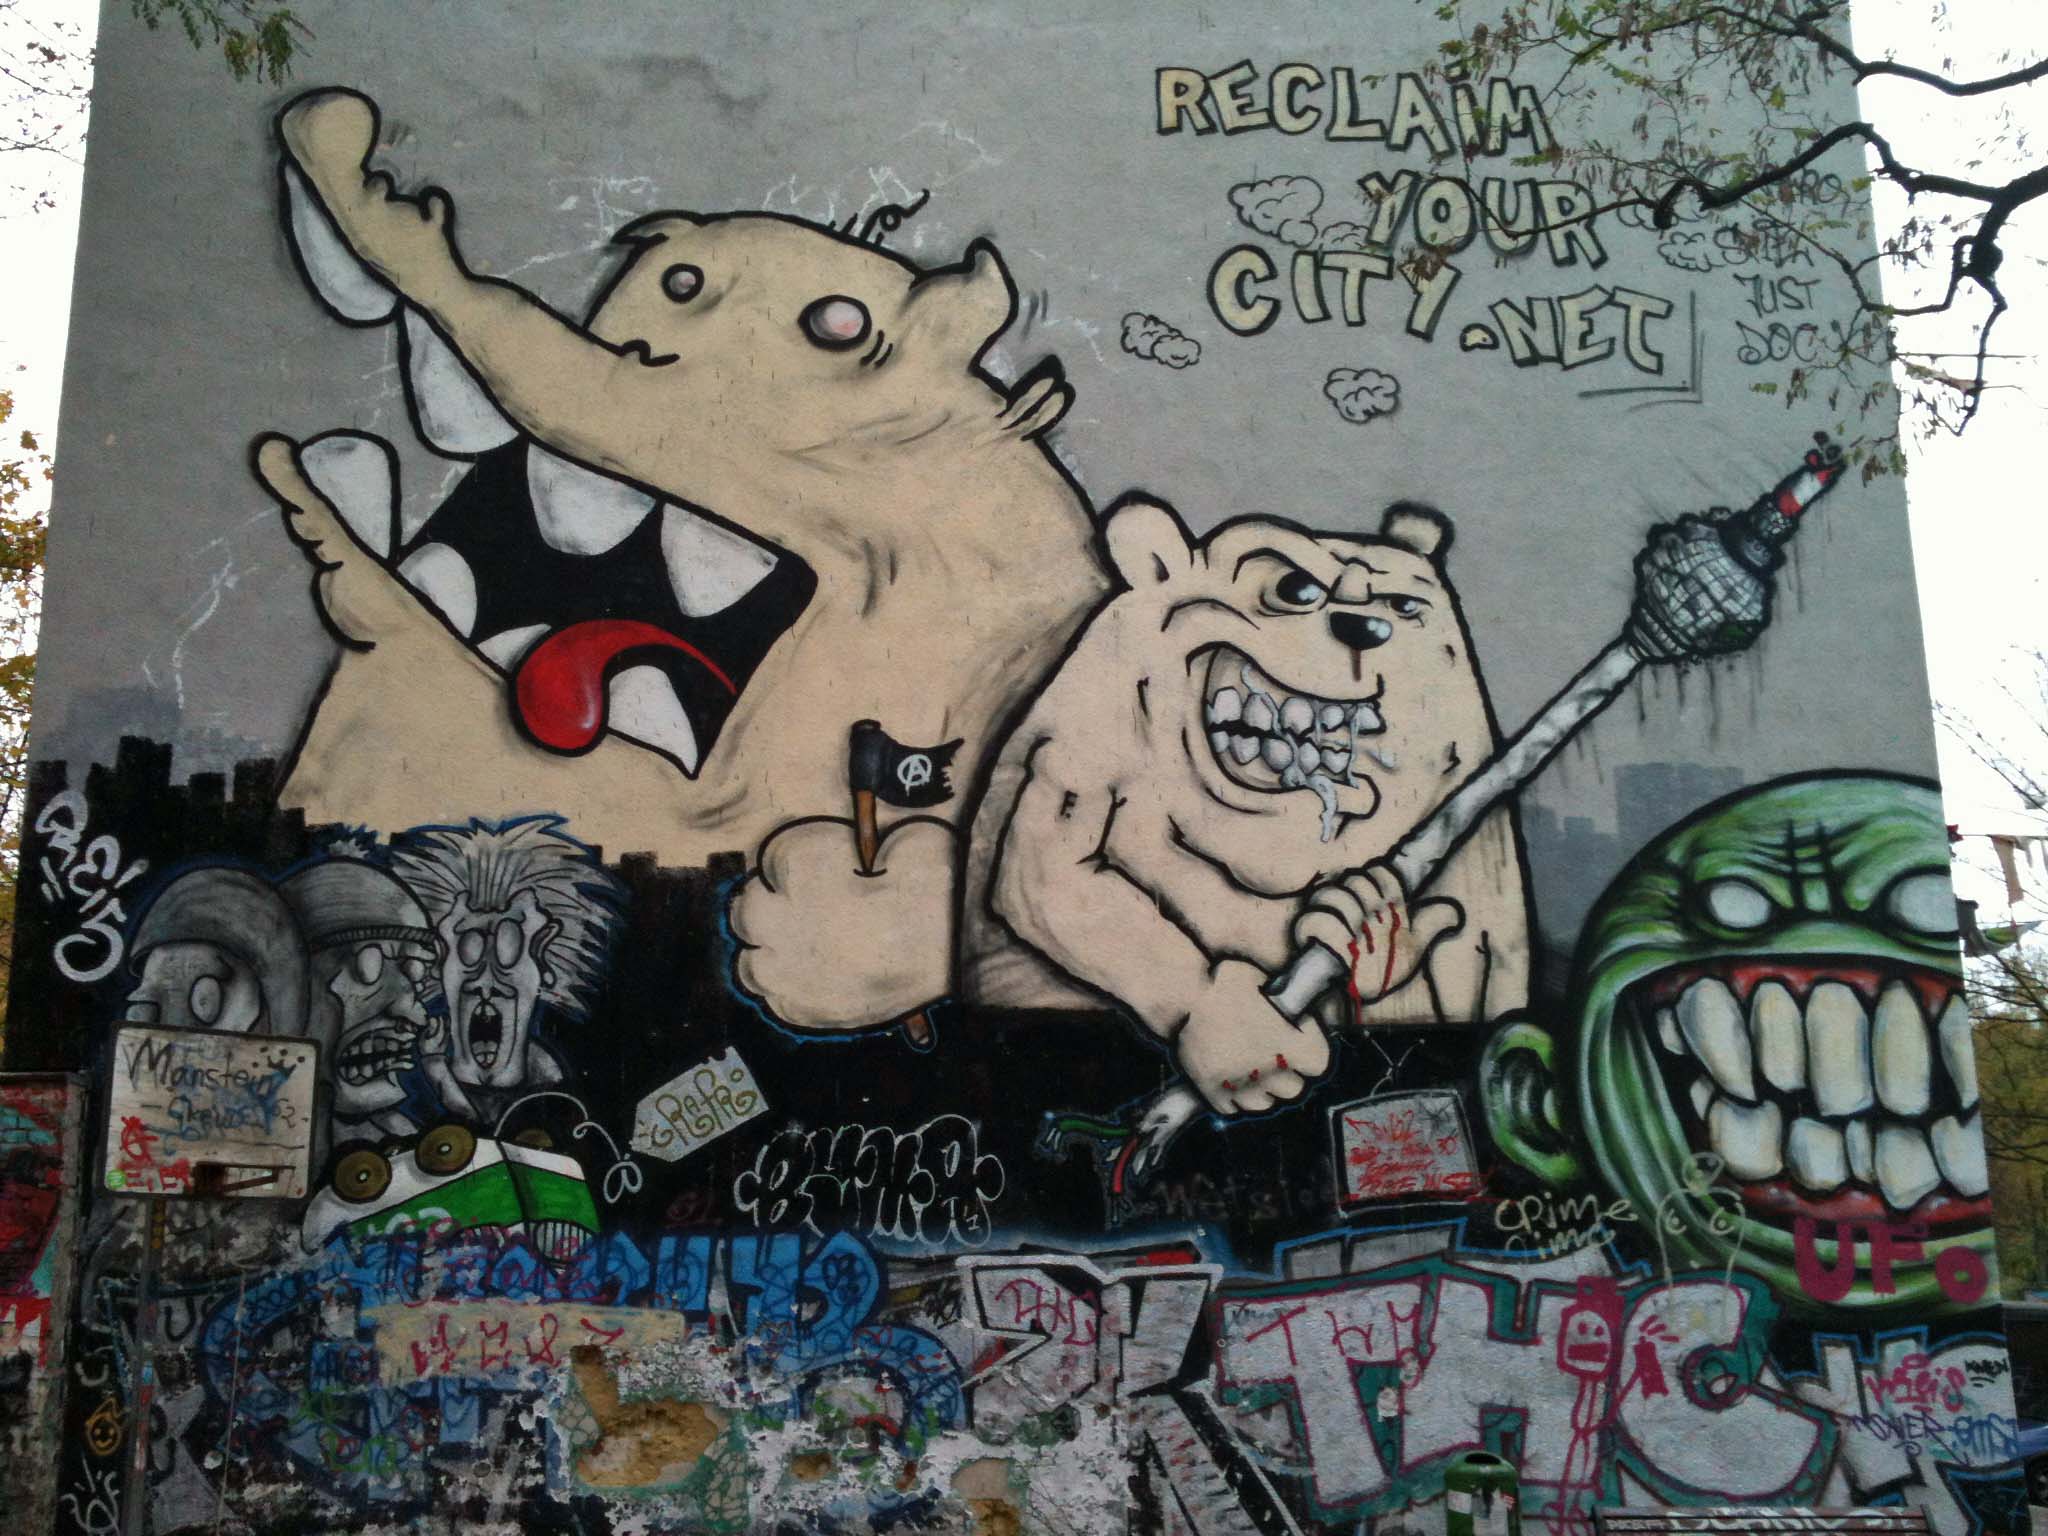 Bears vs Fernsehturm - Street Art by Bimer in Berlin